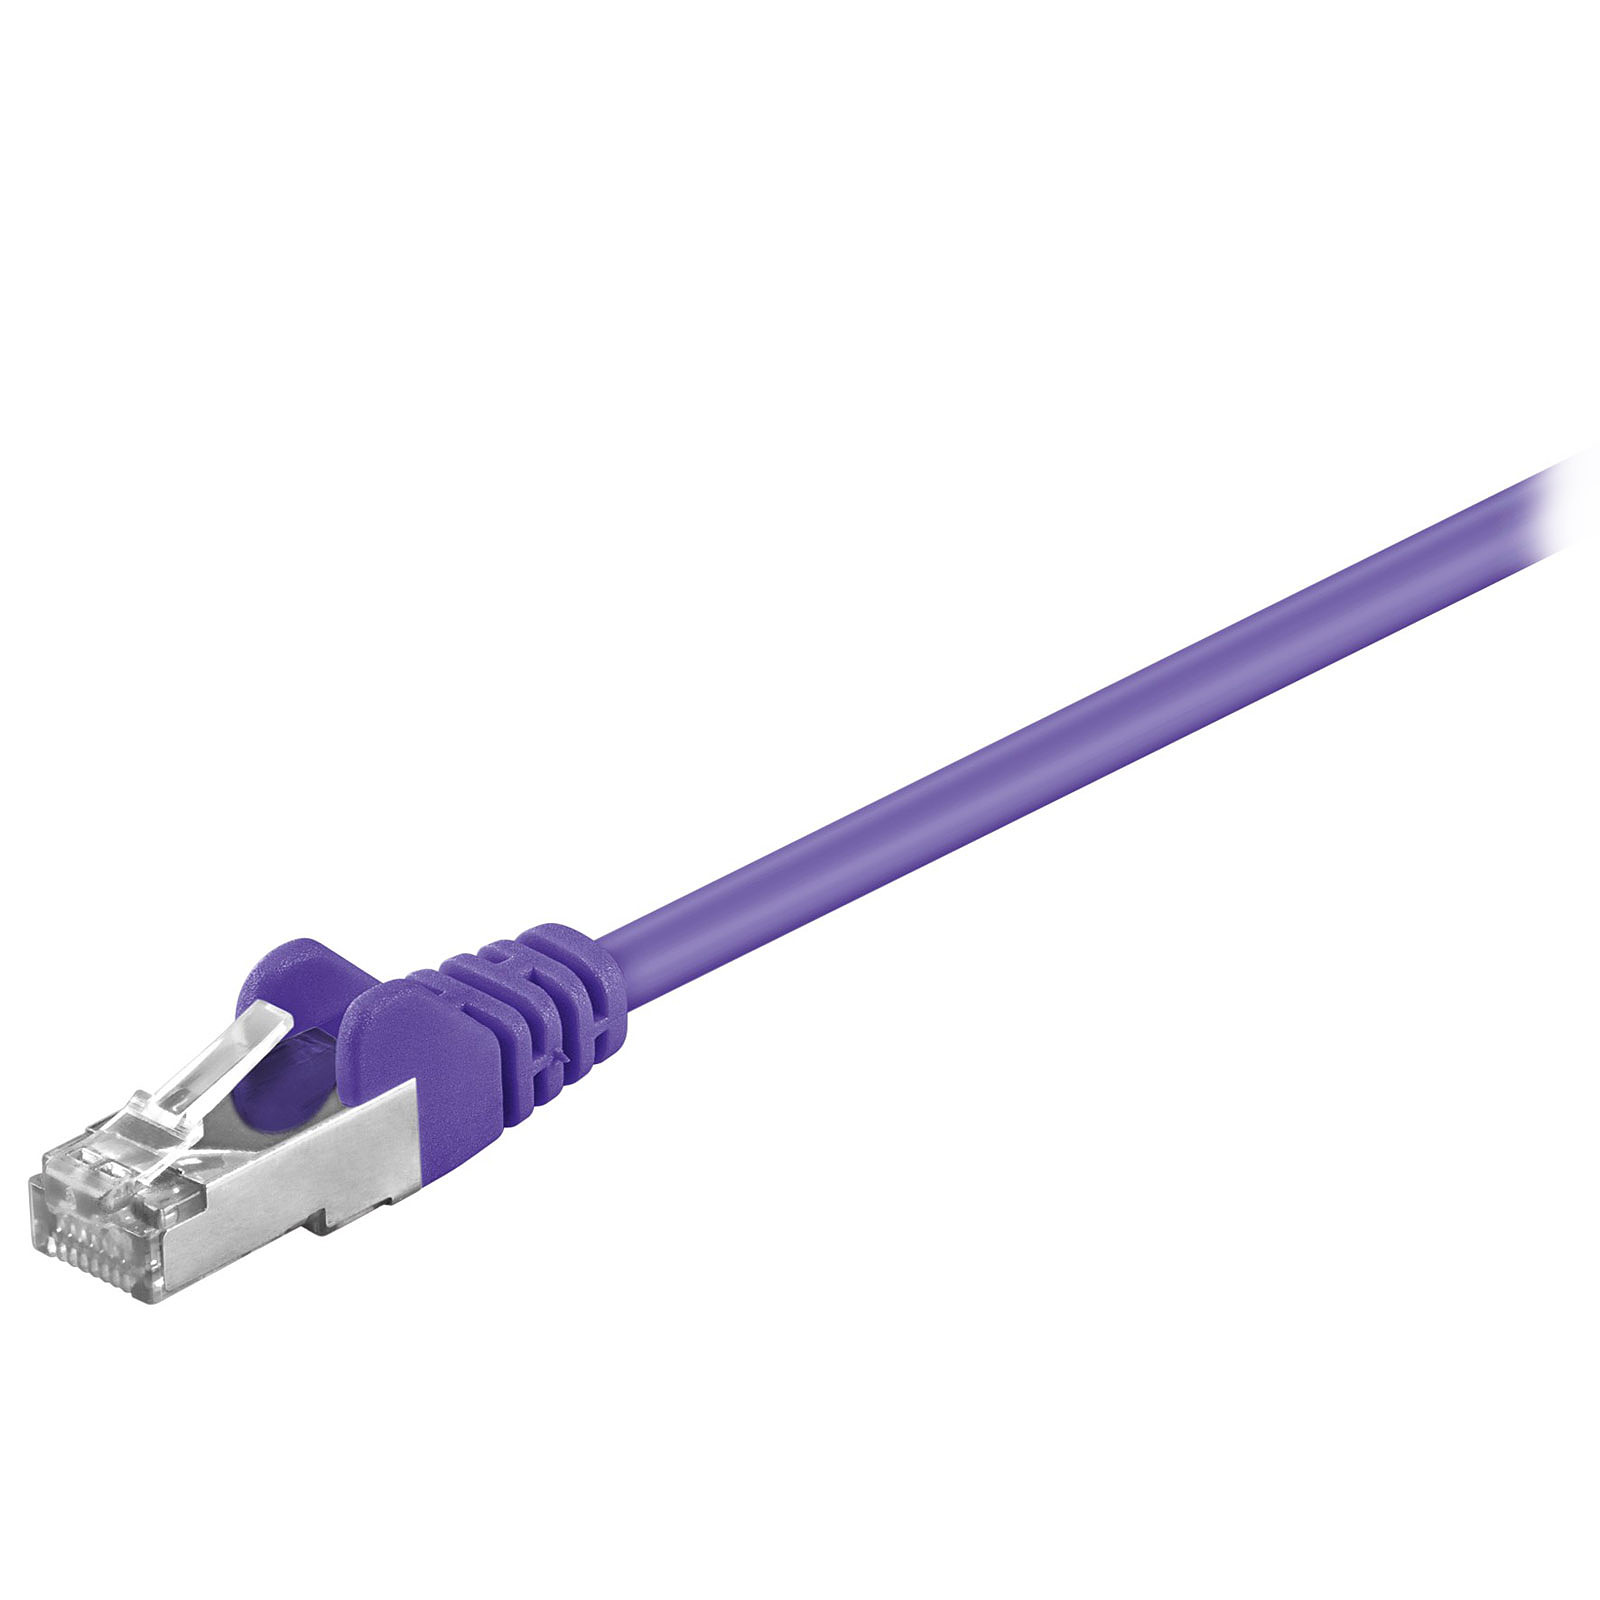 Cable RJ45 categorie 5e U/UTP 0.5 m (Violet) - Cable RJ45 Generique